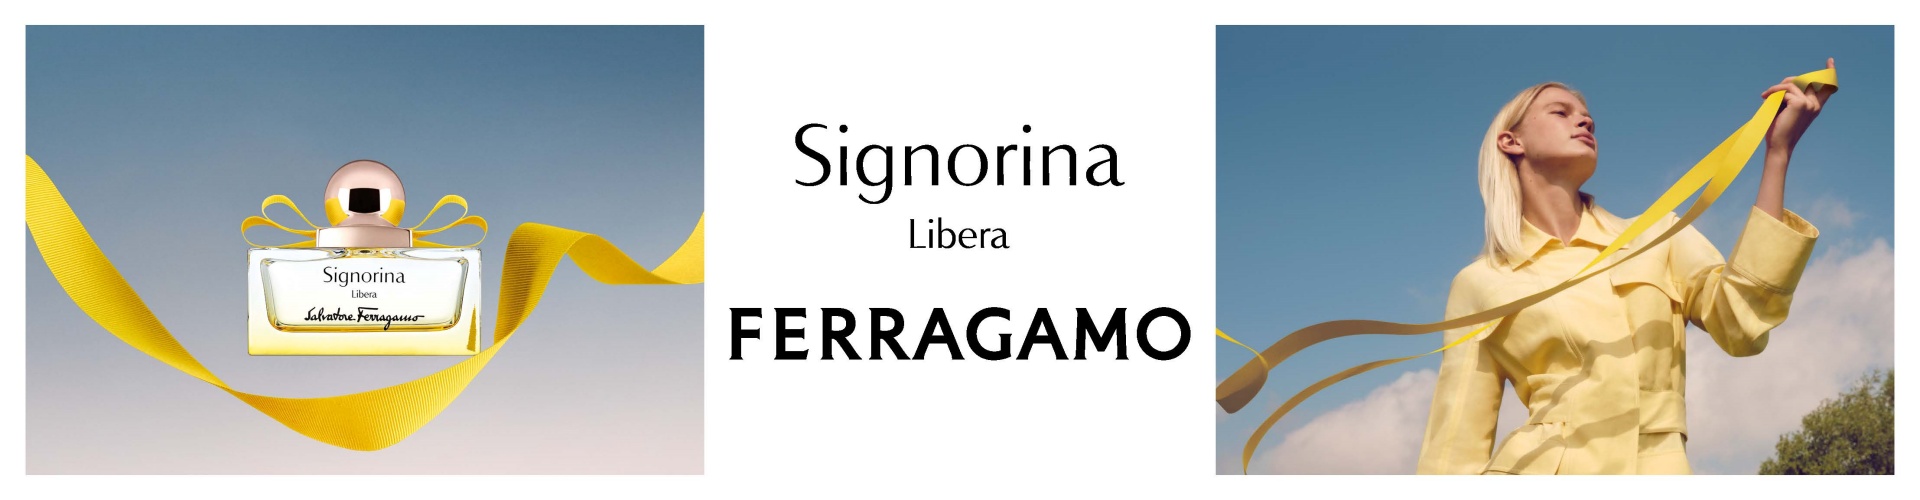 SIGNORINA LIBERA BY SALVATORE FERRAGAMO